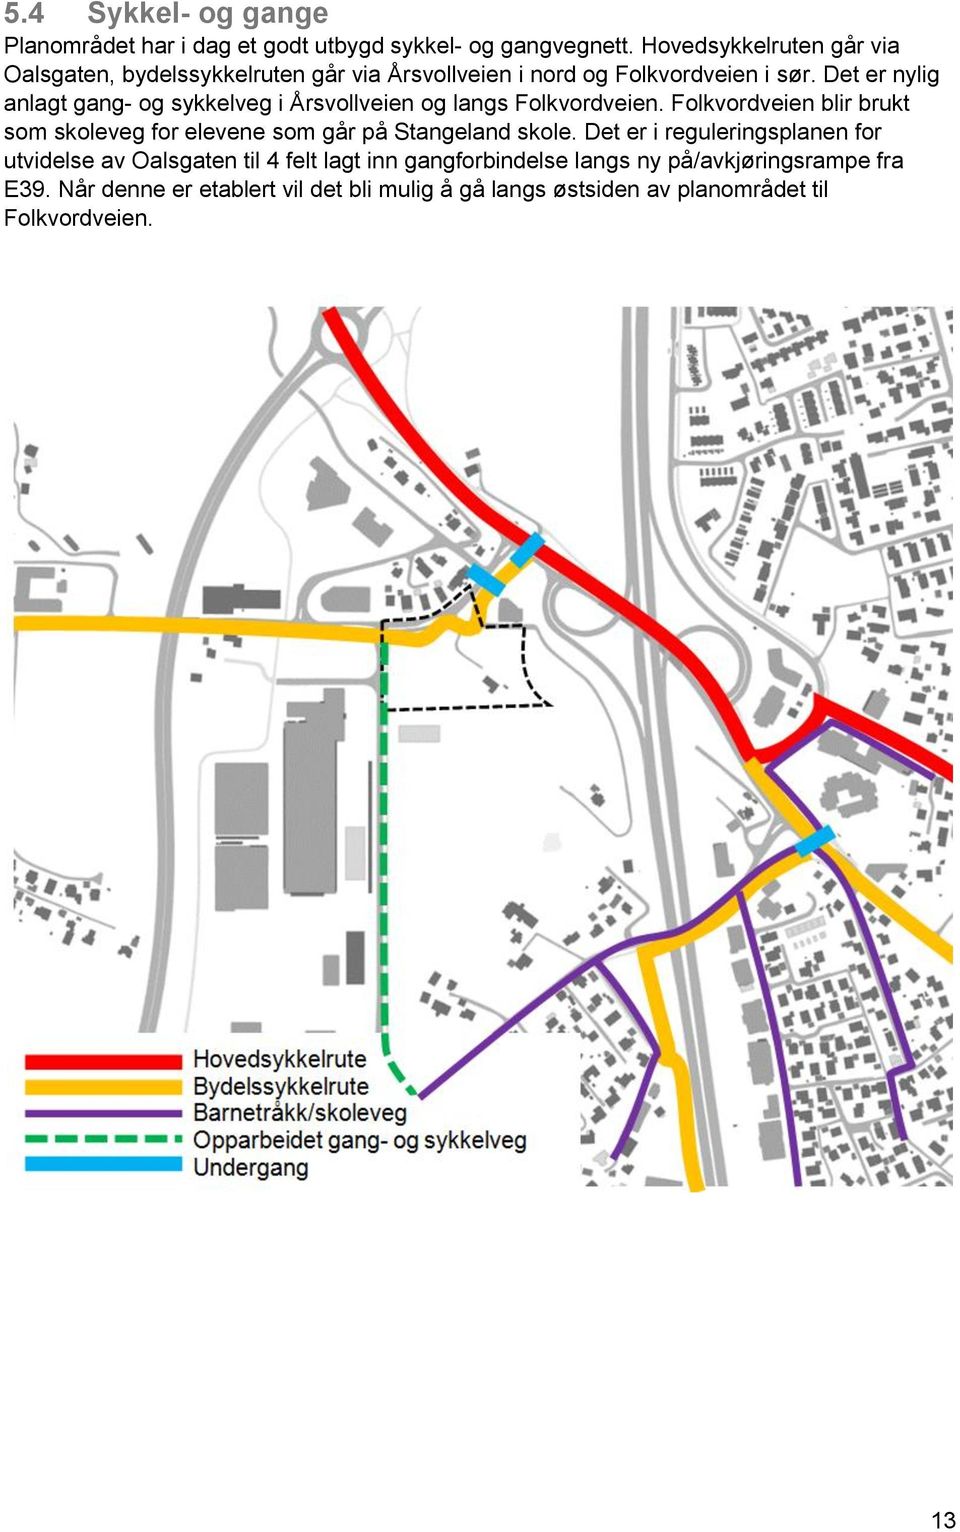 Det er nylig anlagt gang- og sykkelveg i Årsvollveien og langs Folkvordveien.